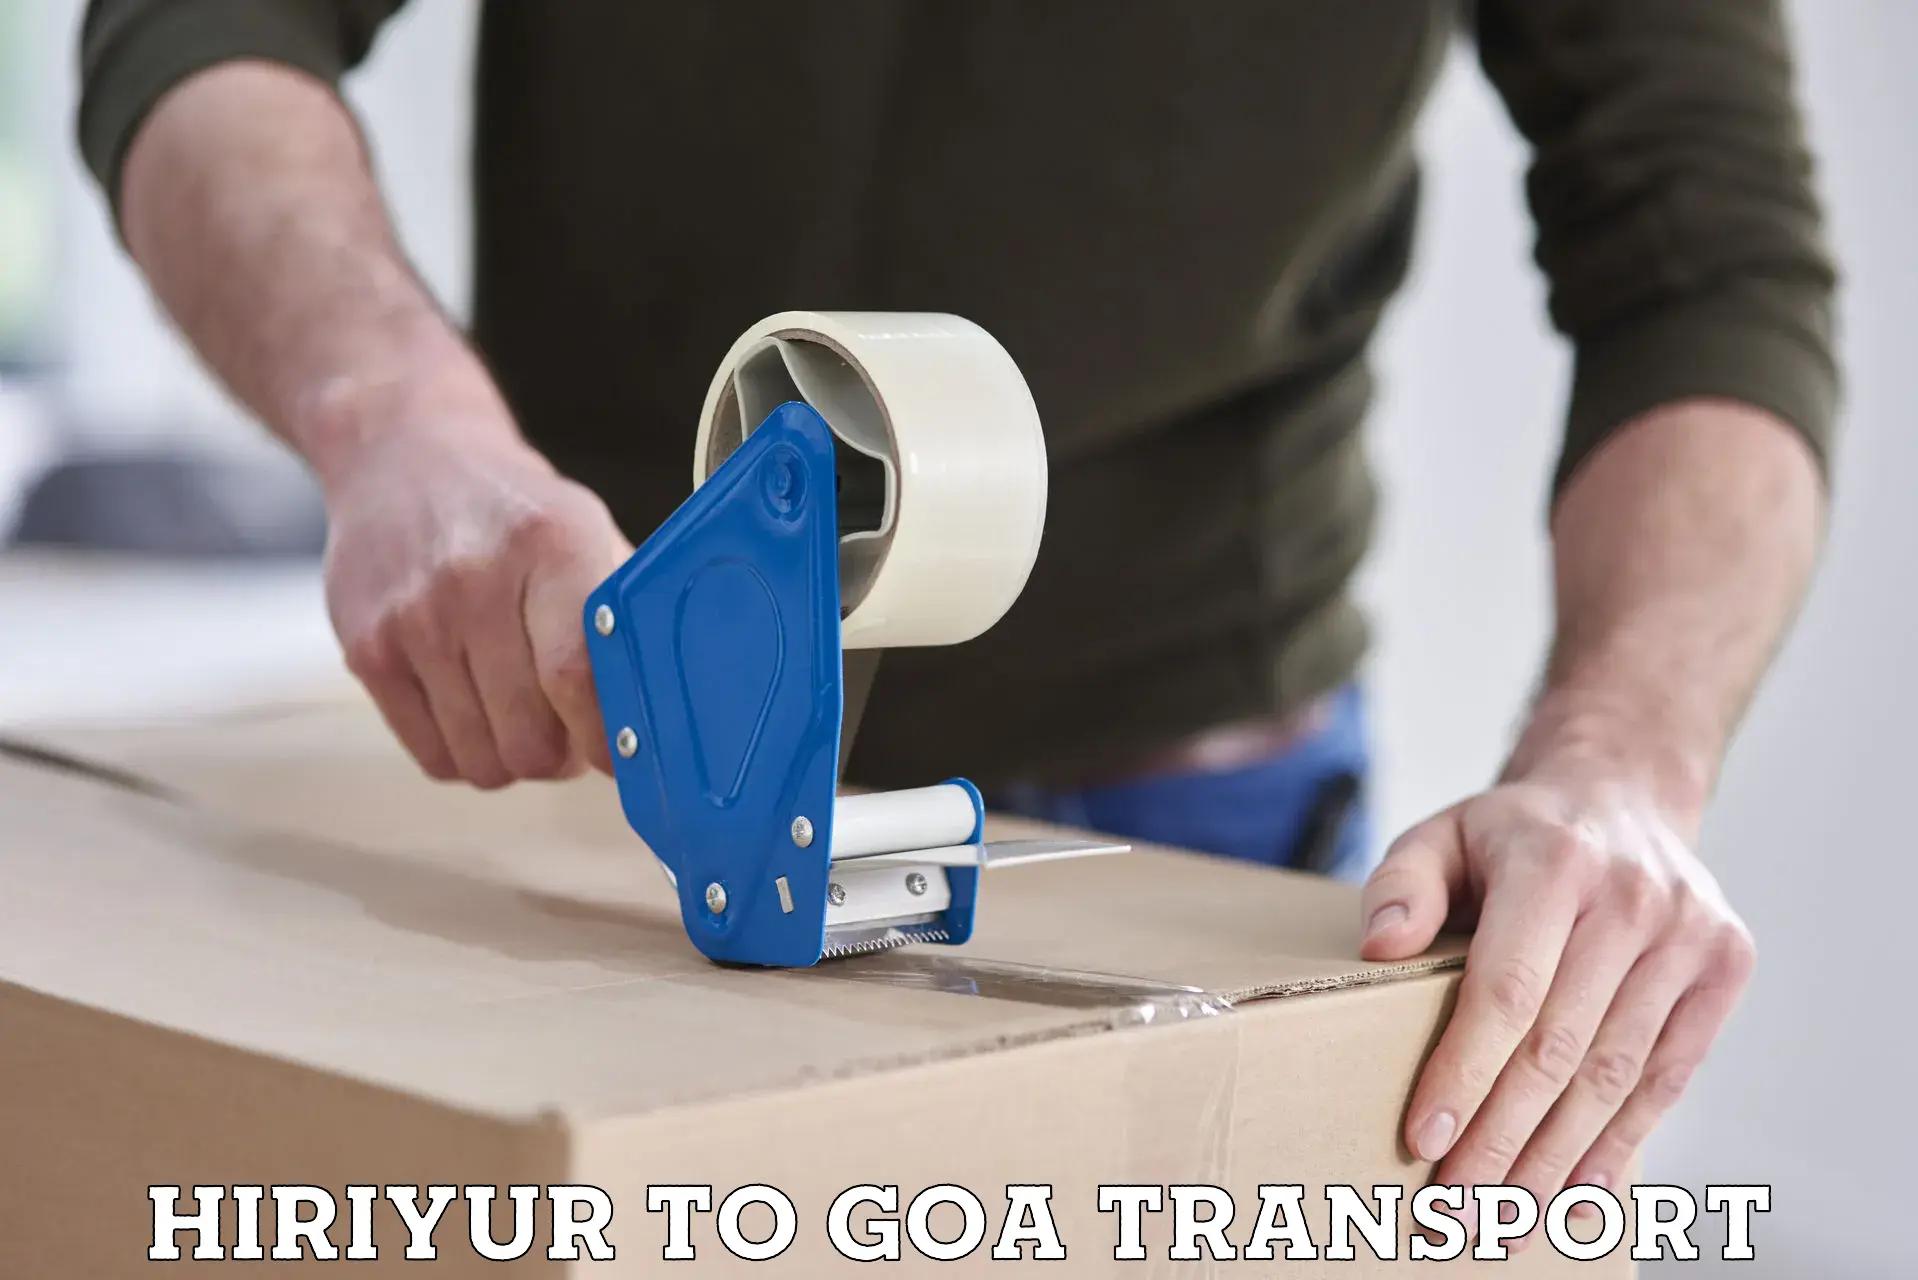 Commercial transport service Hiriyur to Vasco da Gama